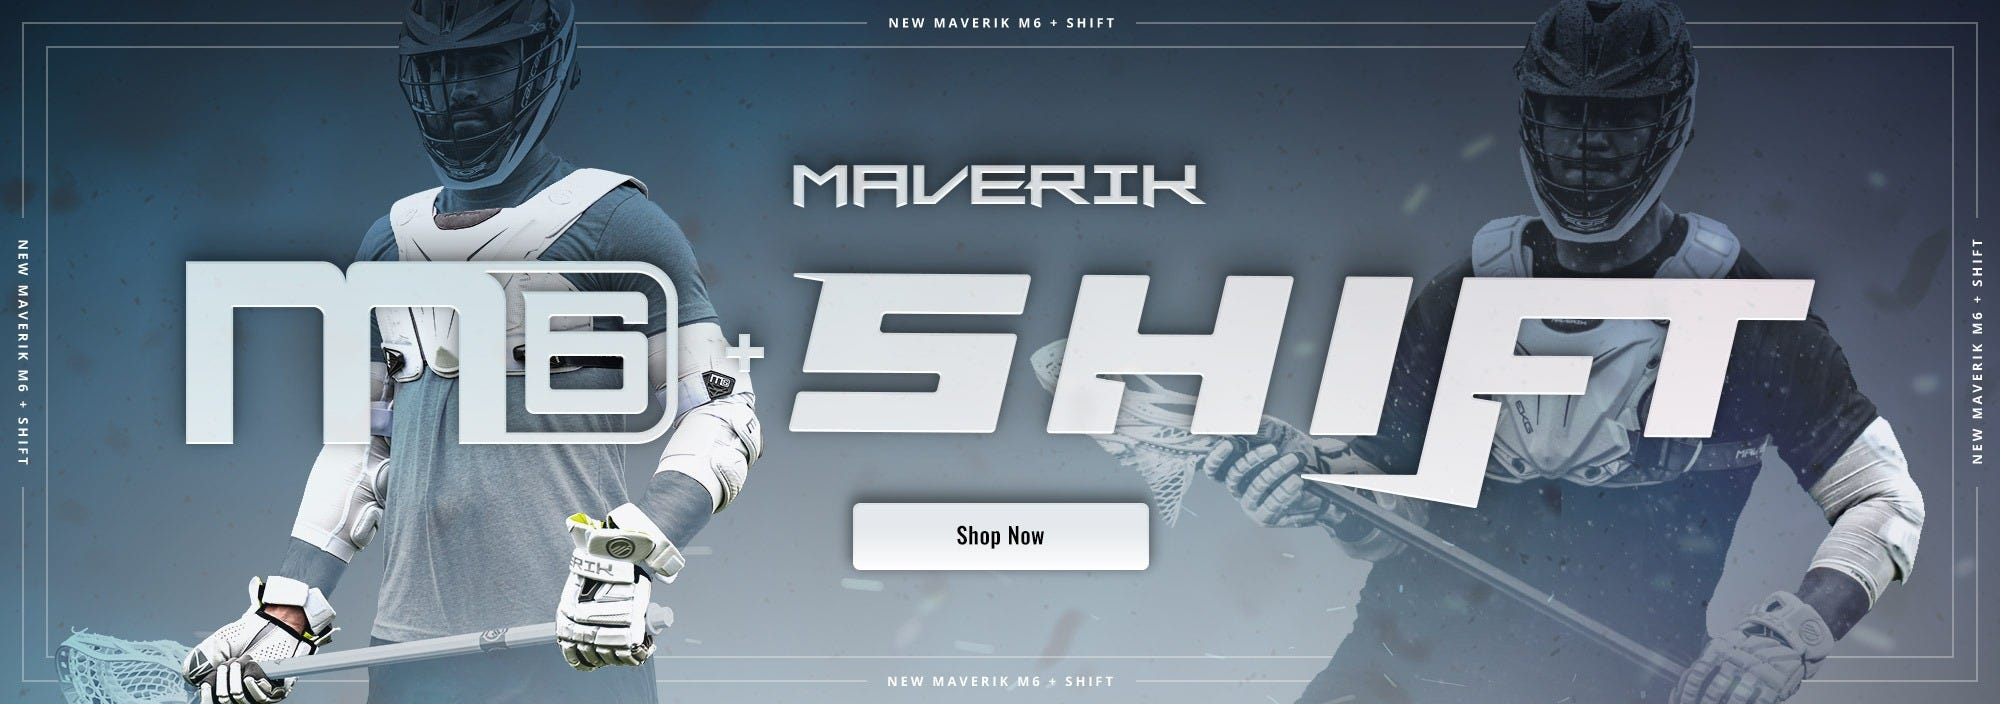 Maverik M6 & Shift Lacrosse Equipment